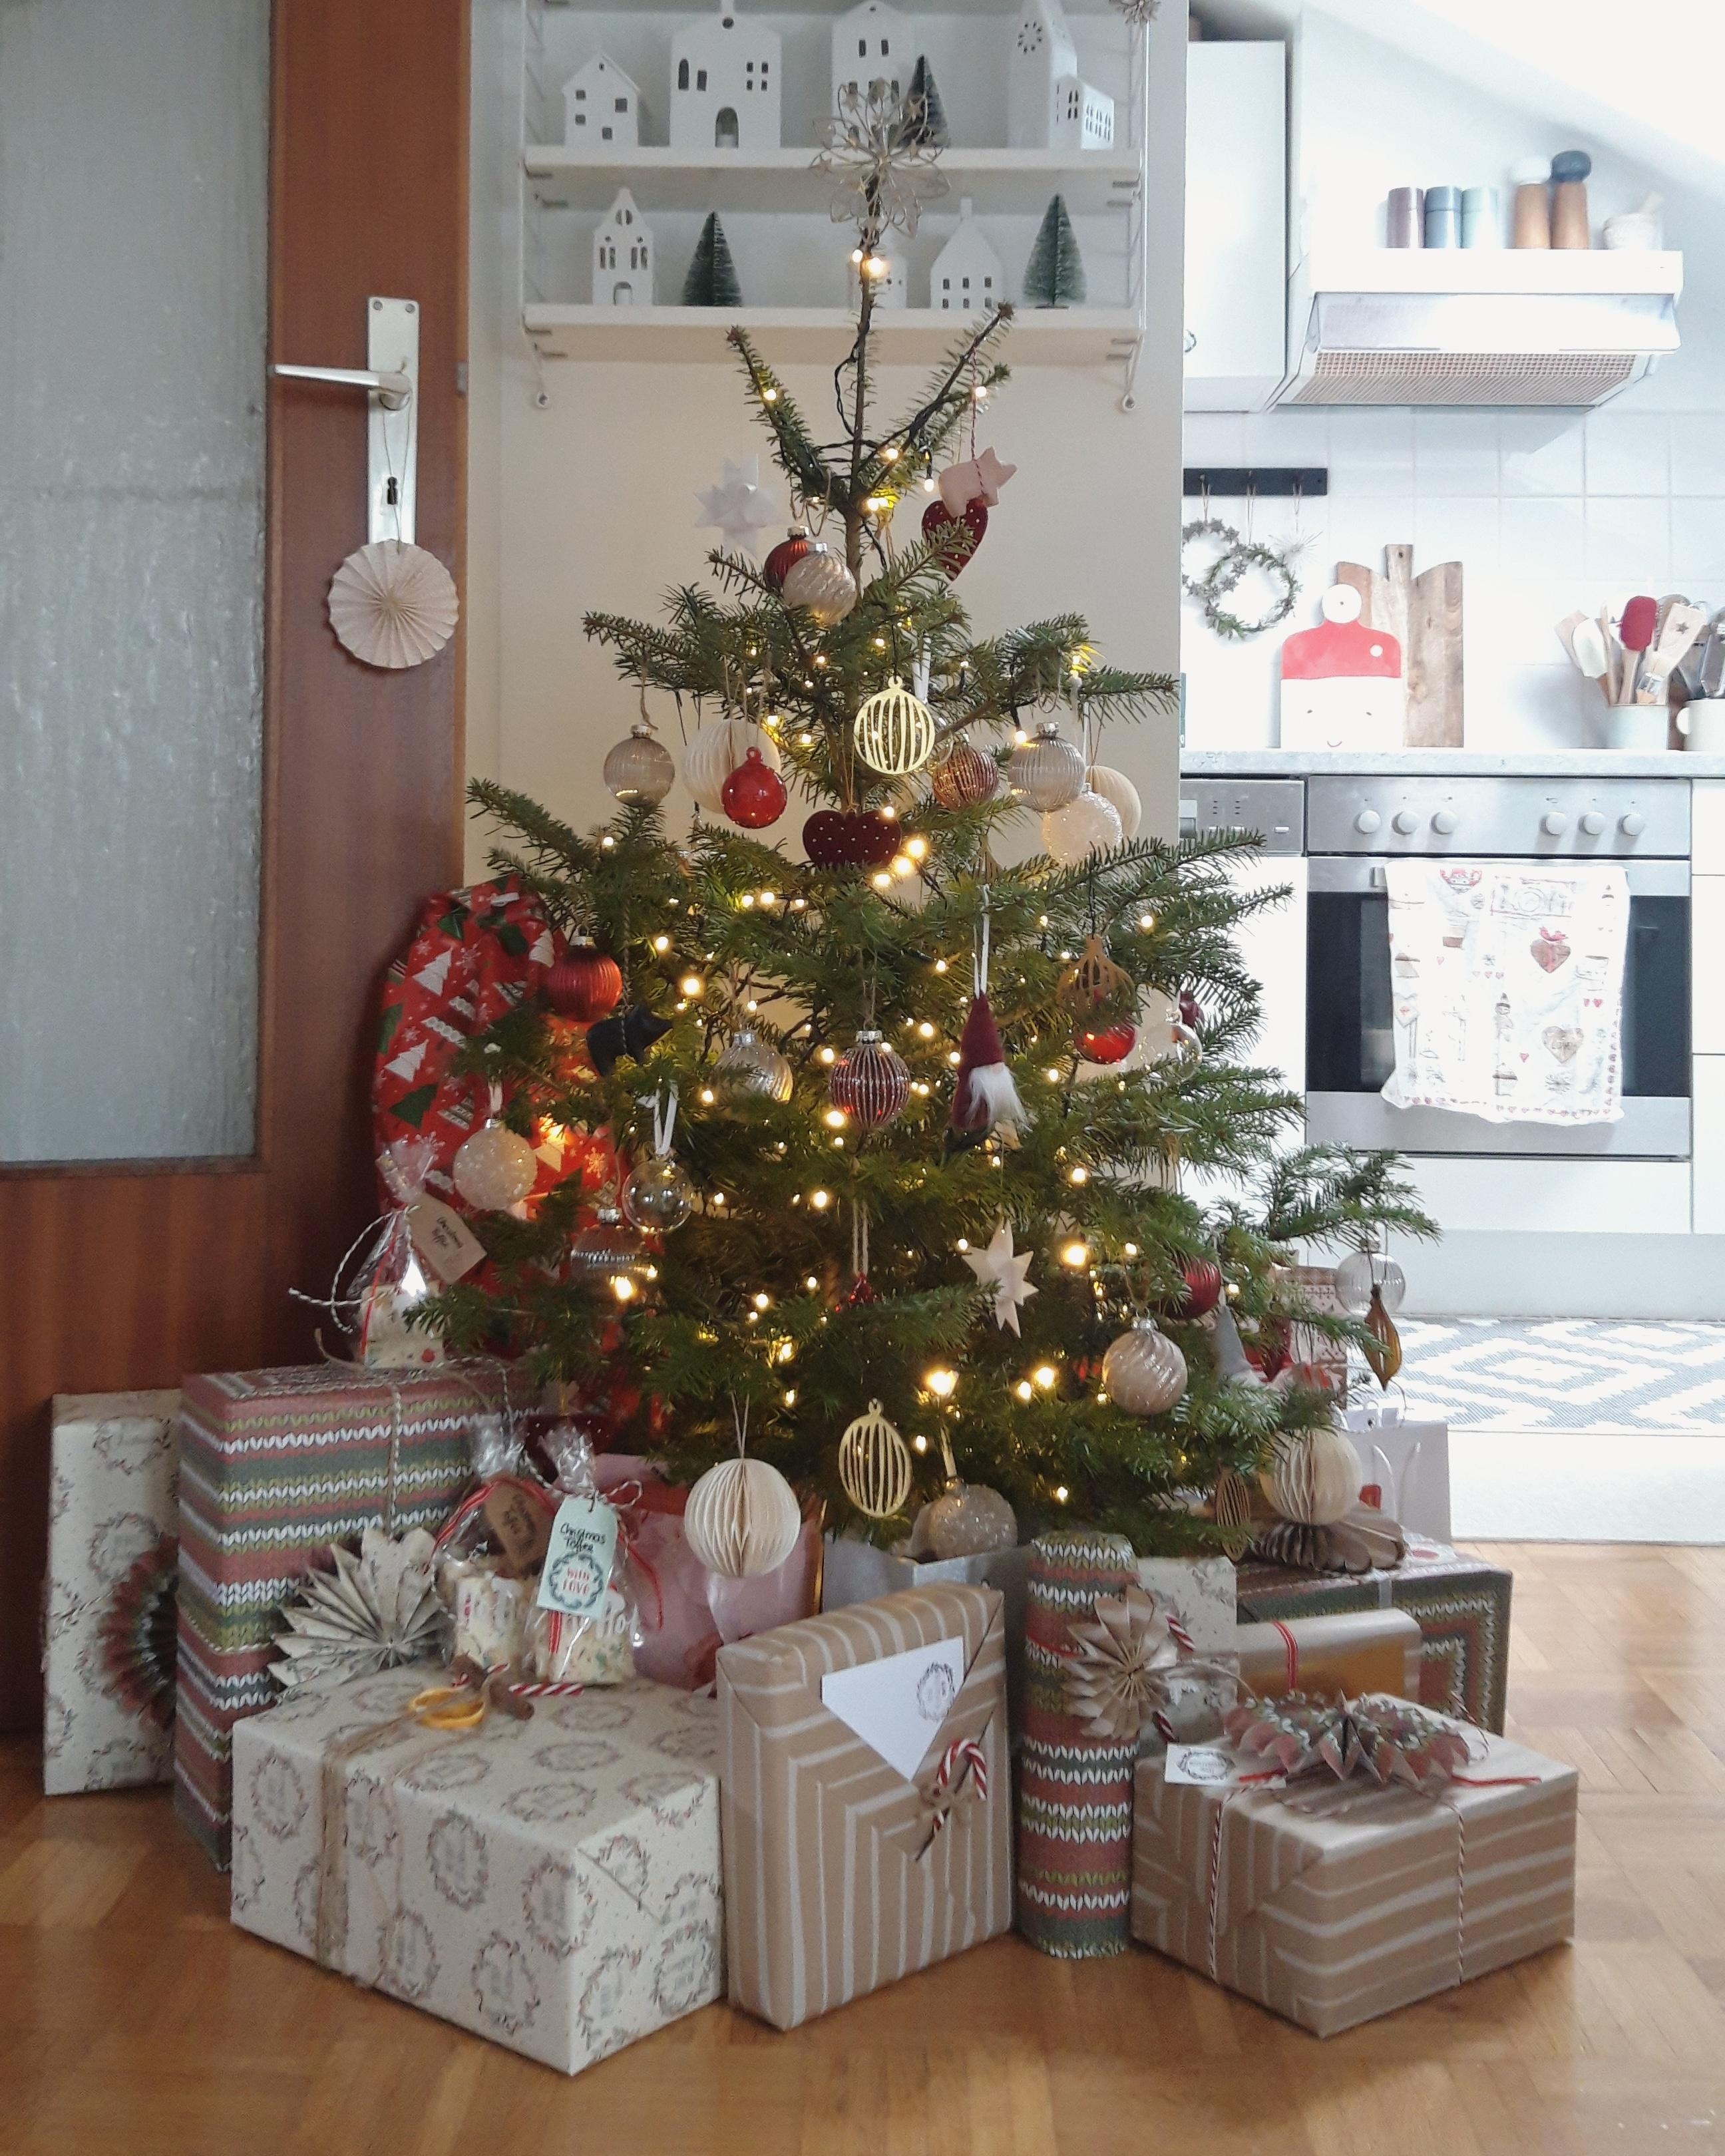 Weihnachtsbaum🎄
#weihnachten #weihnachtsdeko #weihnachtszeit #christmas #xmas #hygge #couchstyle 